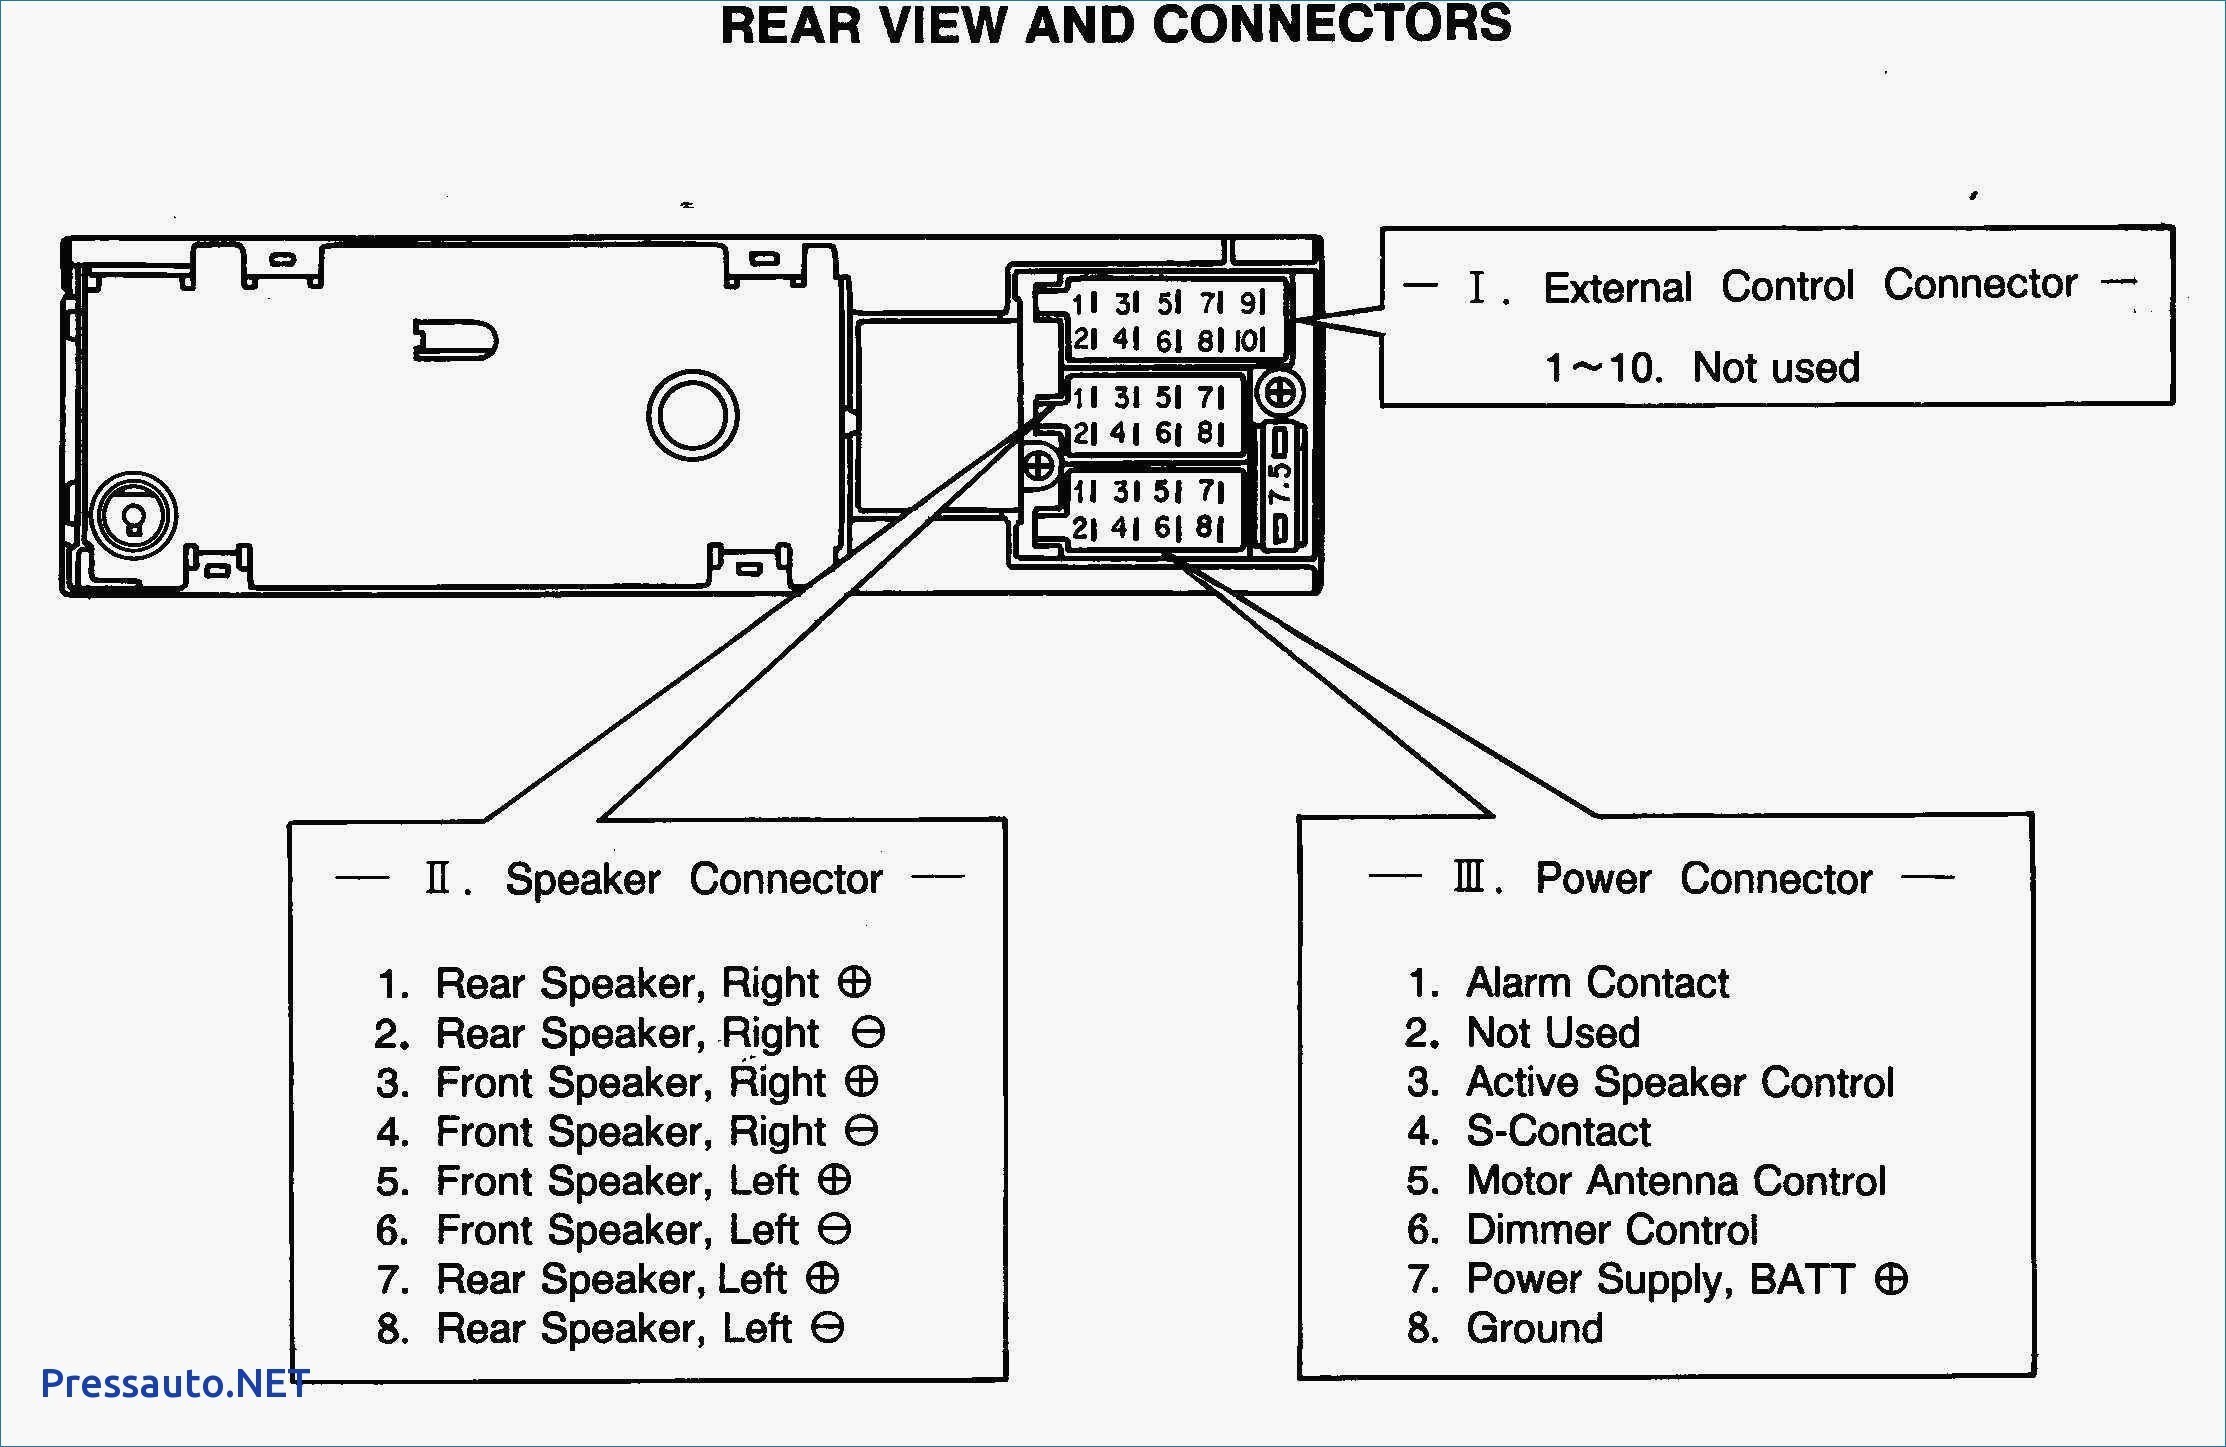 Speaker Wiring Diagram Series Vs Parallel New Car Speakers Wiring Diagram Fresh Speaker Wiring Diagram Series